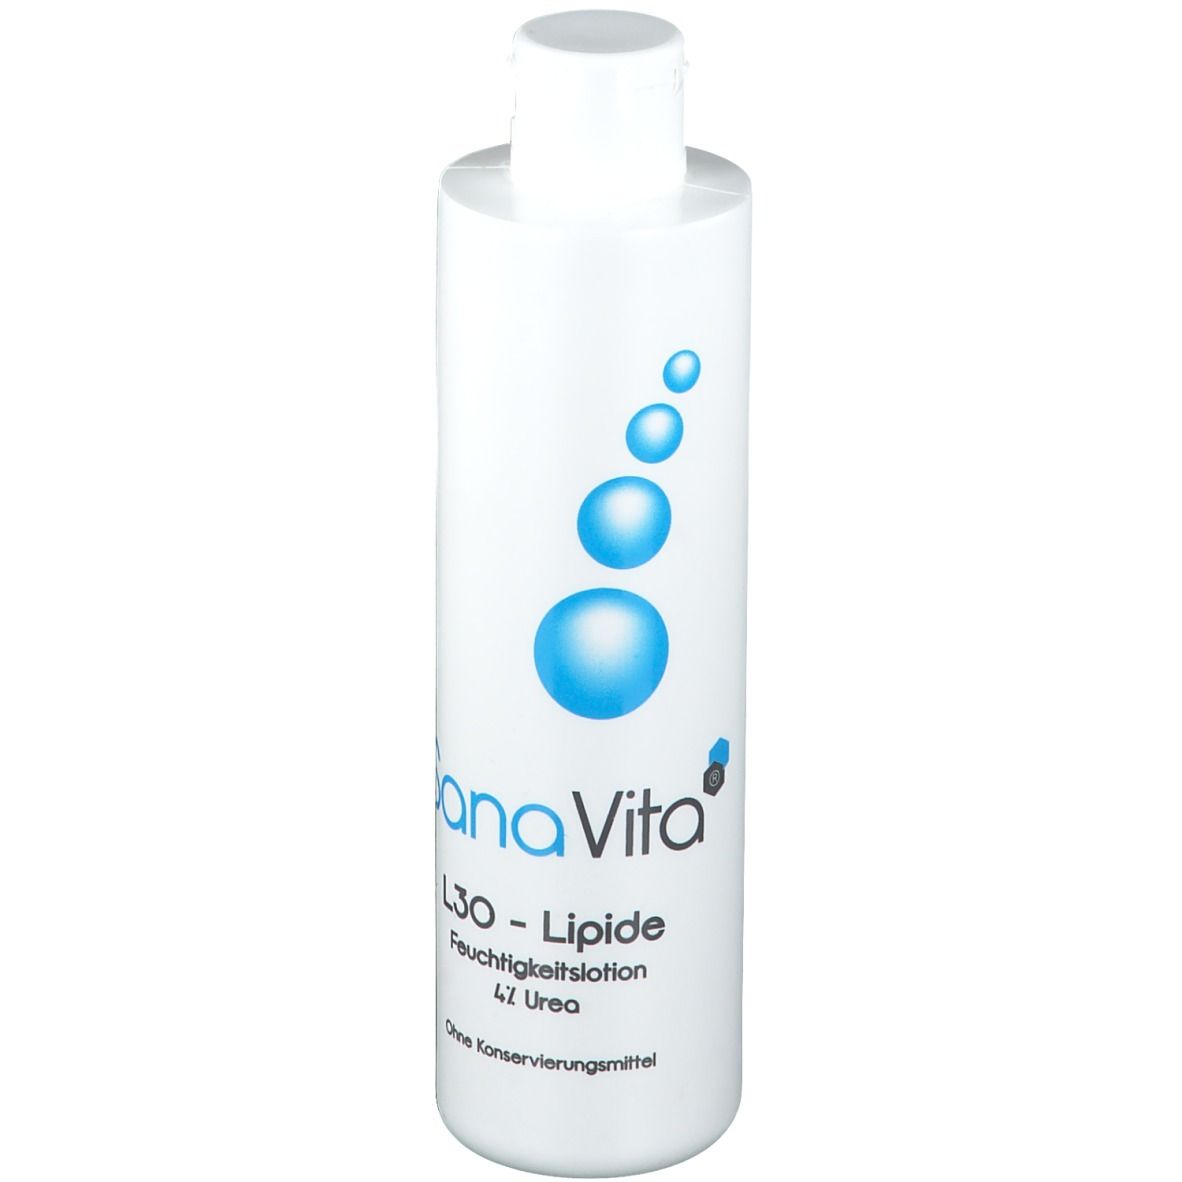 Sana Vita® L30 Lipide Feuchtigkeitslotion